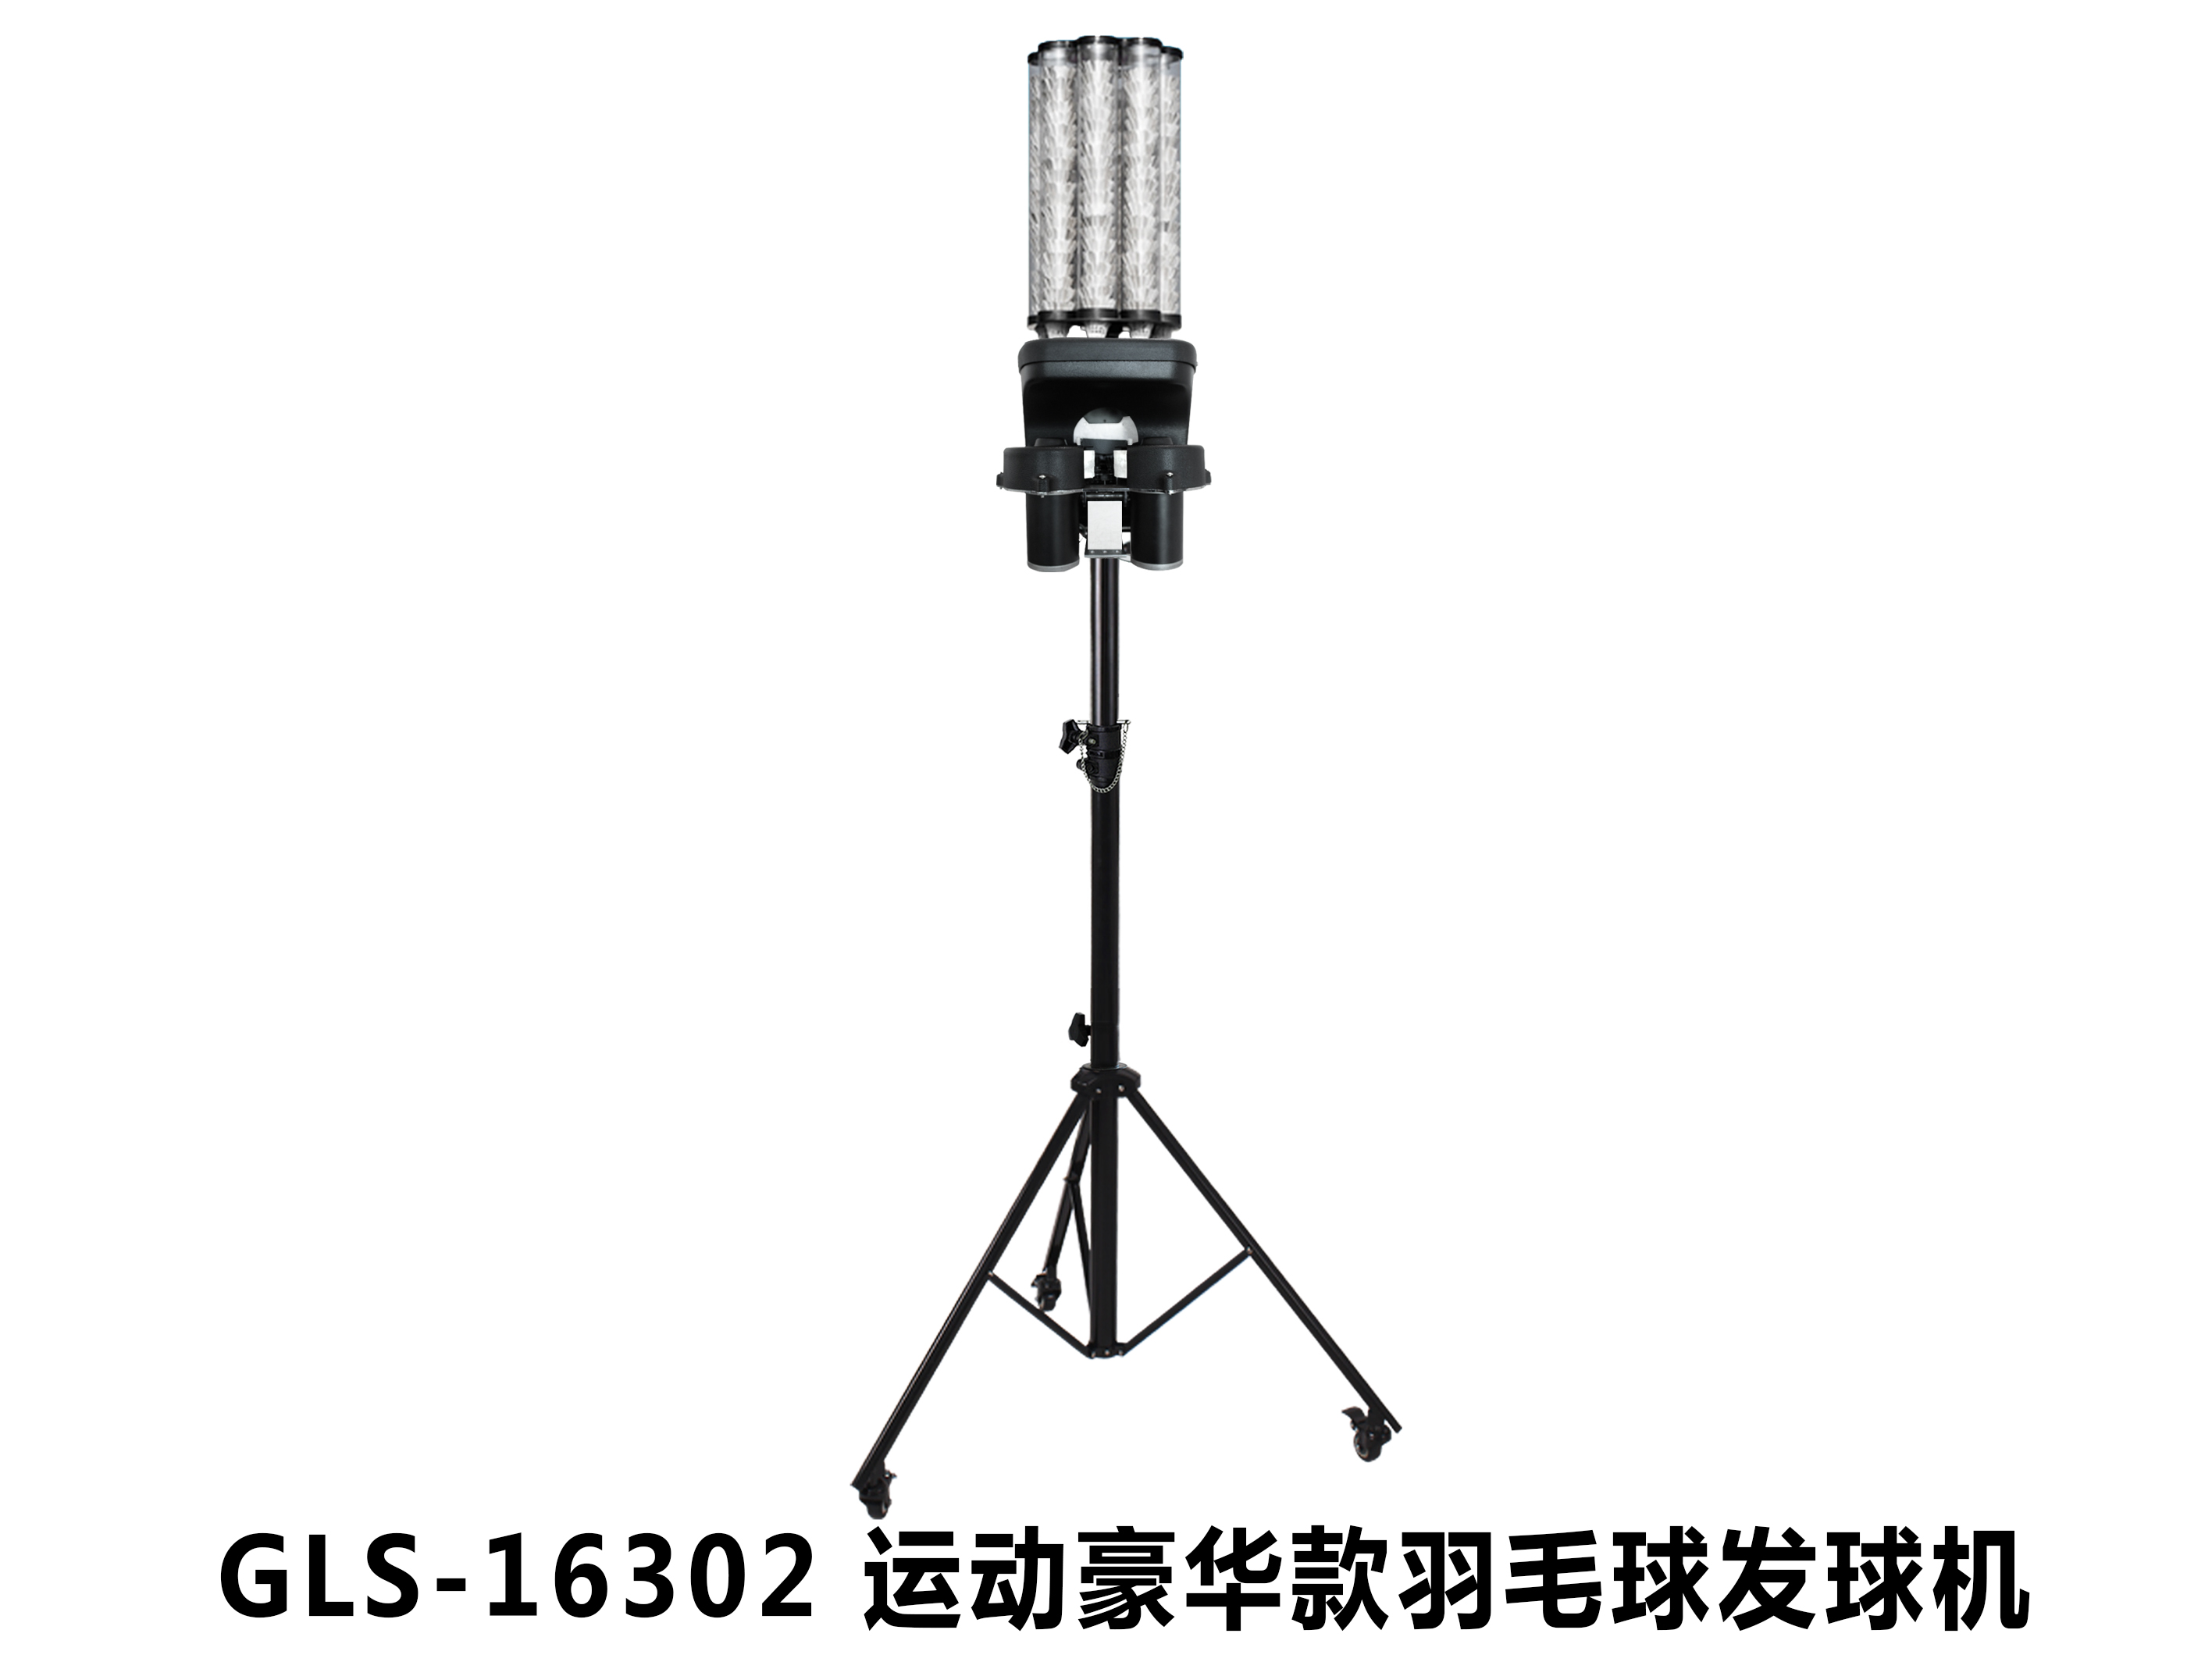 GLS-16302 羽毛球发球机